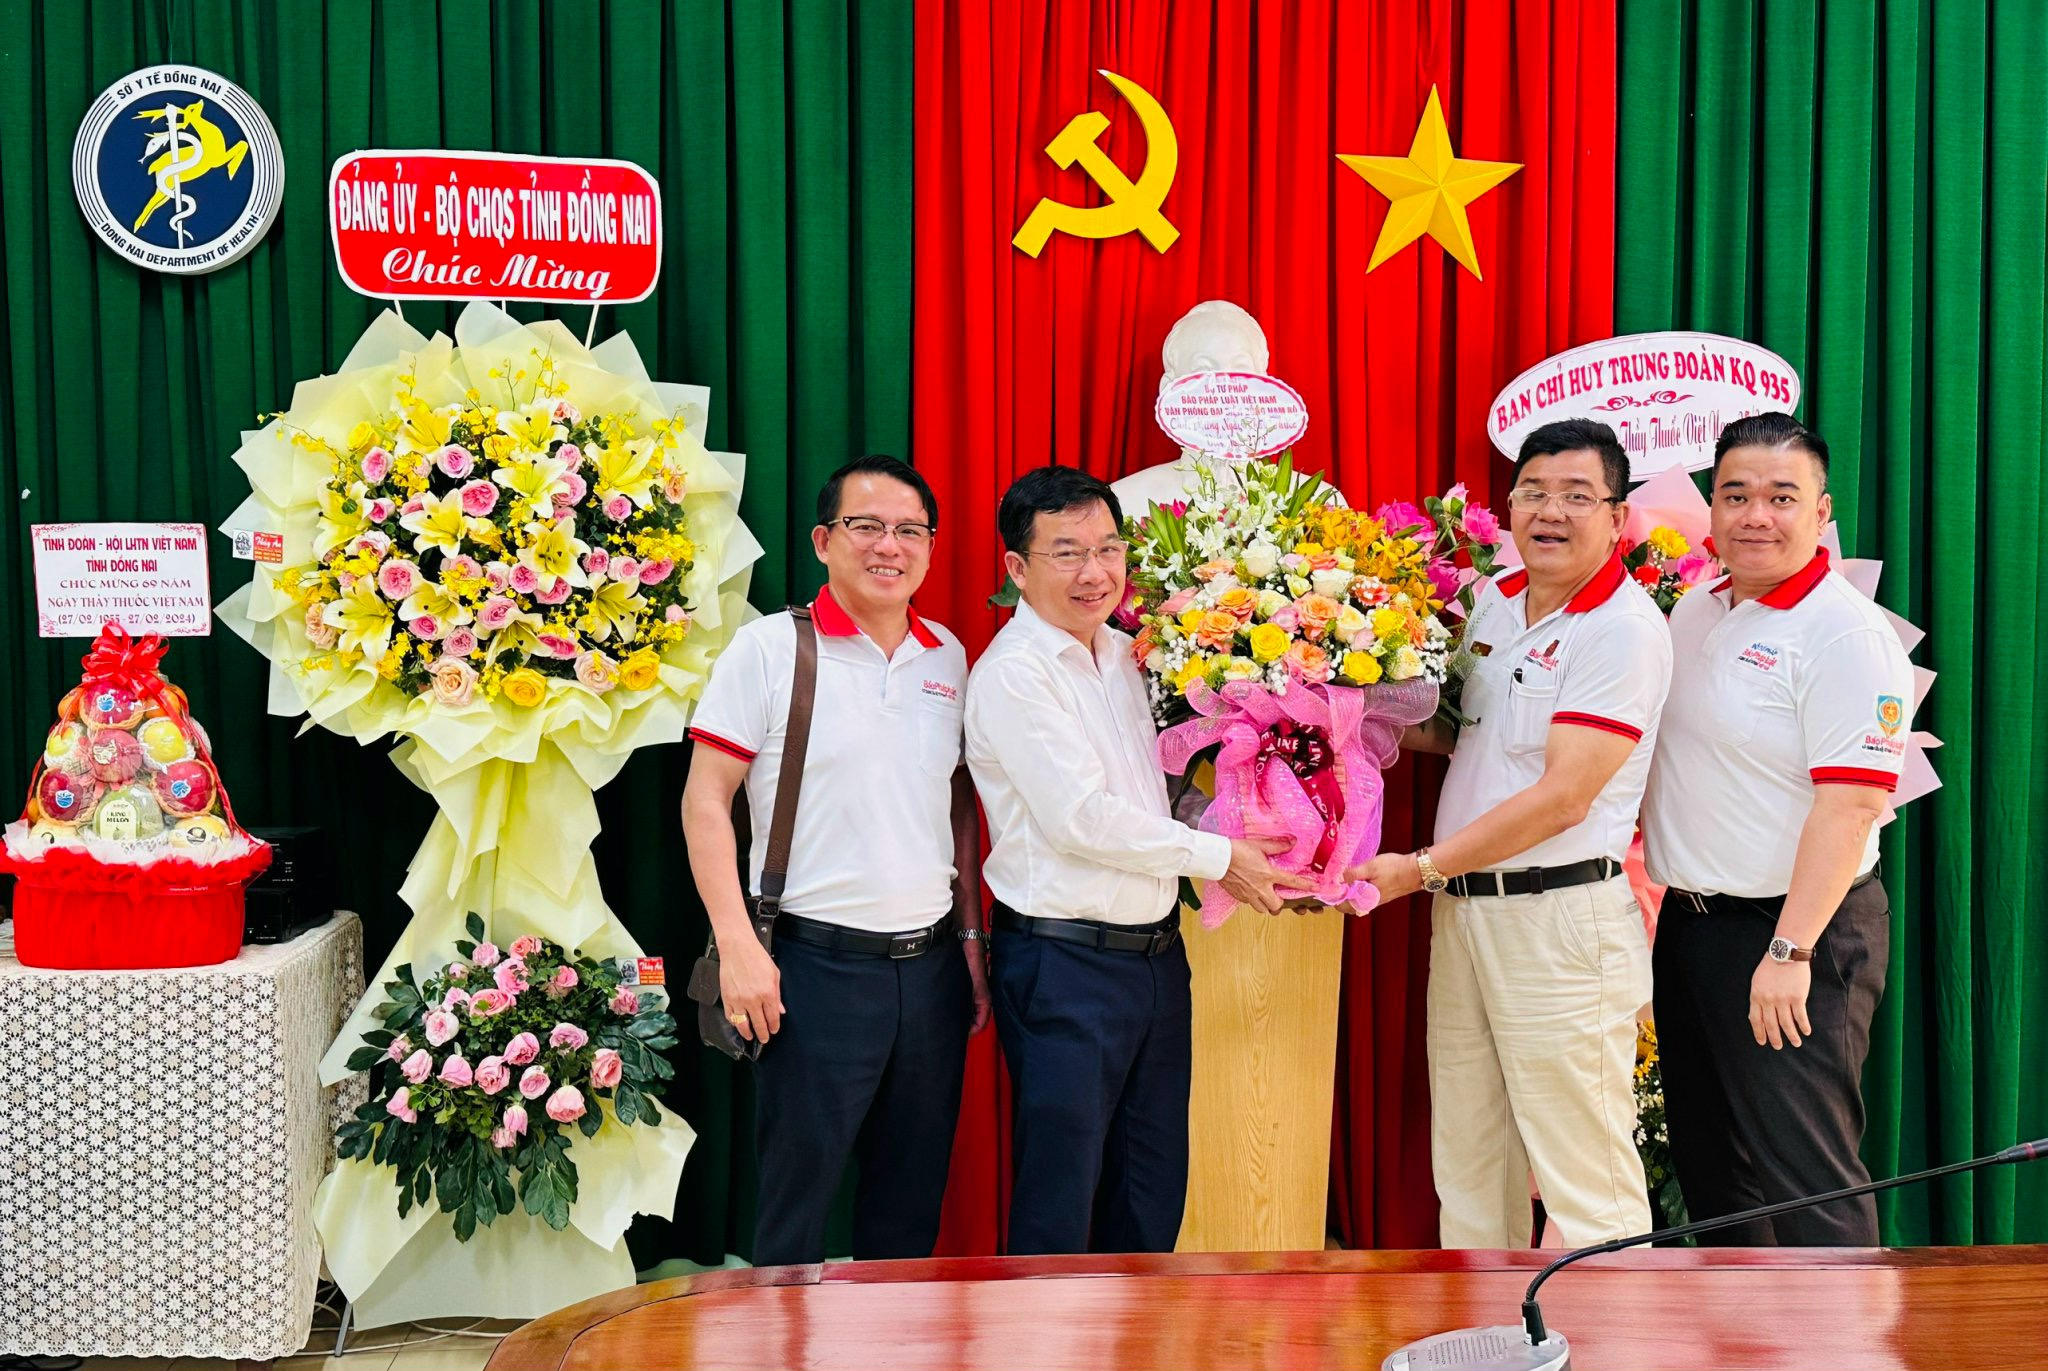 Ông Lê Quang Trung - Giám đốc Sở Y tế Đồng Nai nhận hoa chúc mừng từ Đại diện Báo Pháp luật Việt Nam, Văn phòng Đông Nam Bộ.